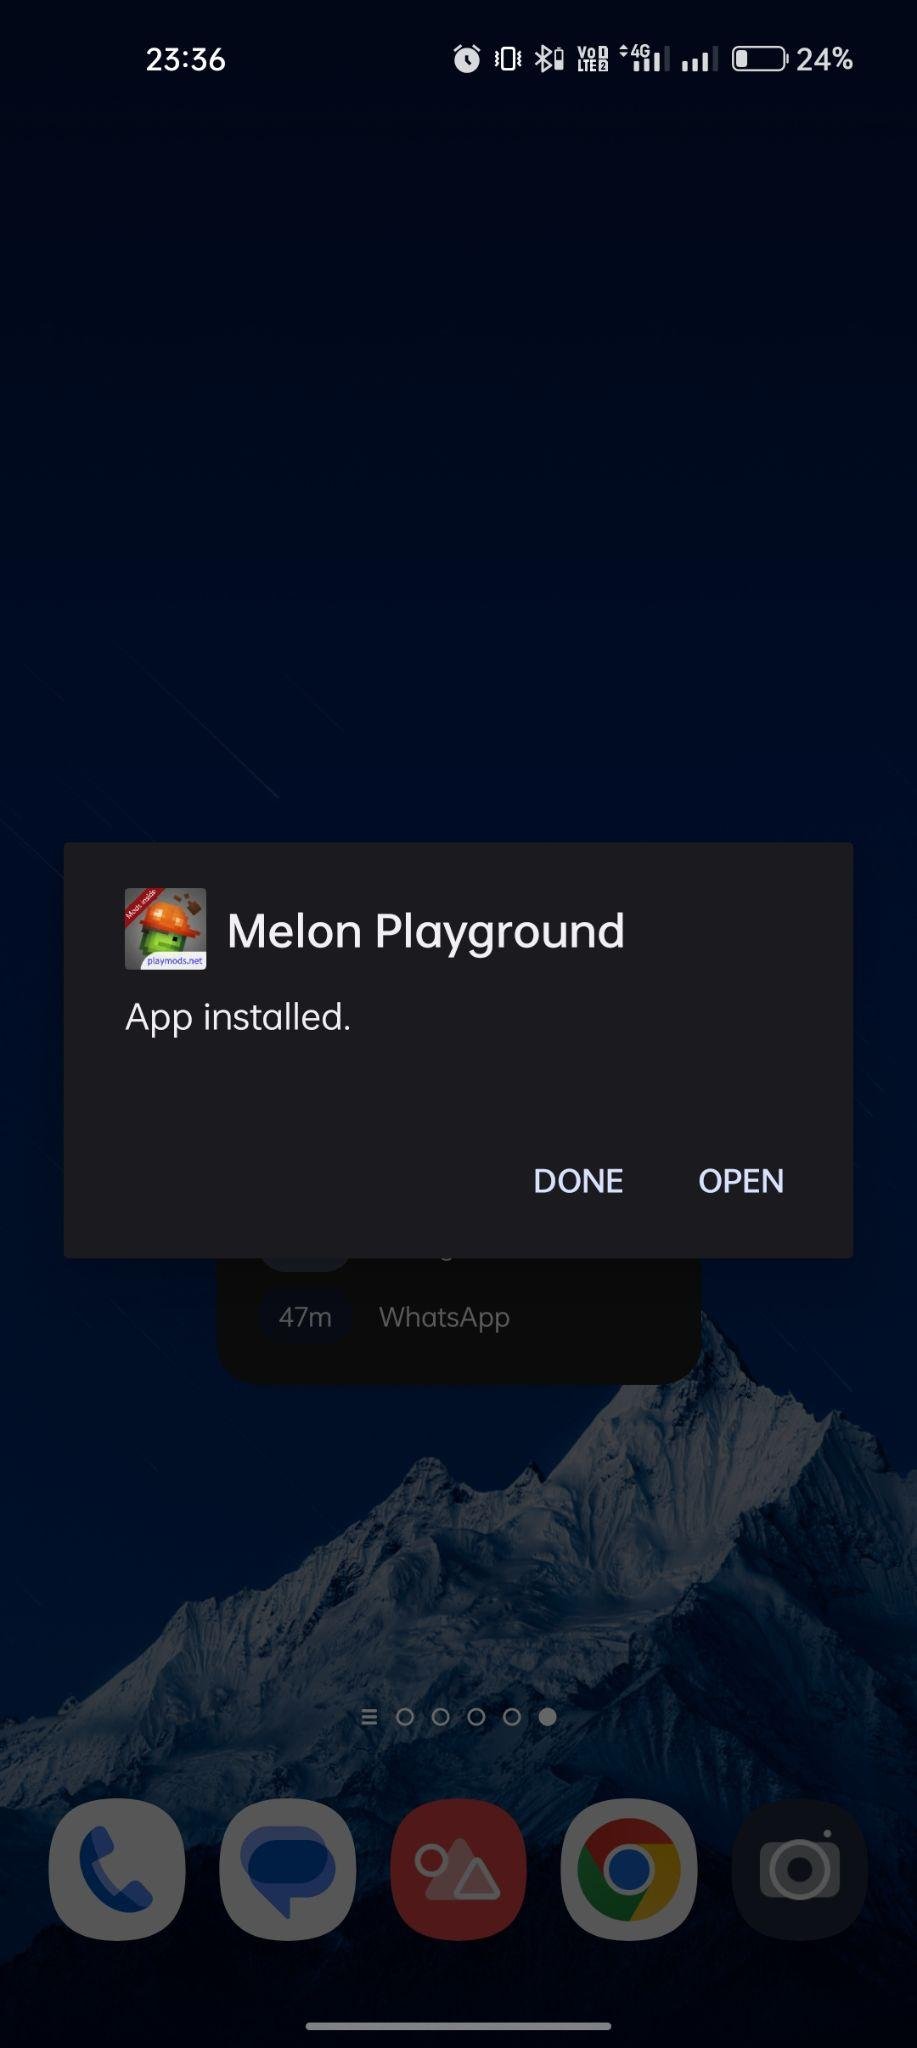 Melon Playground apk installed